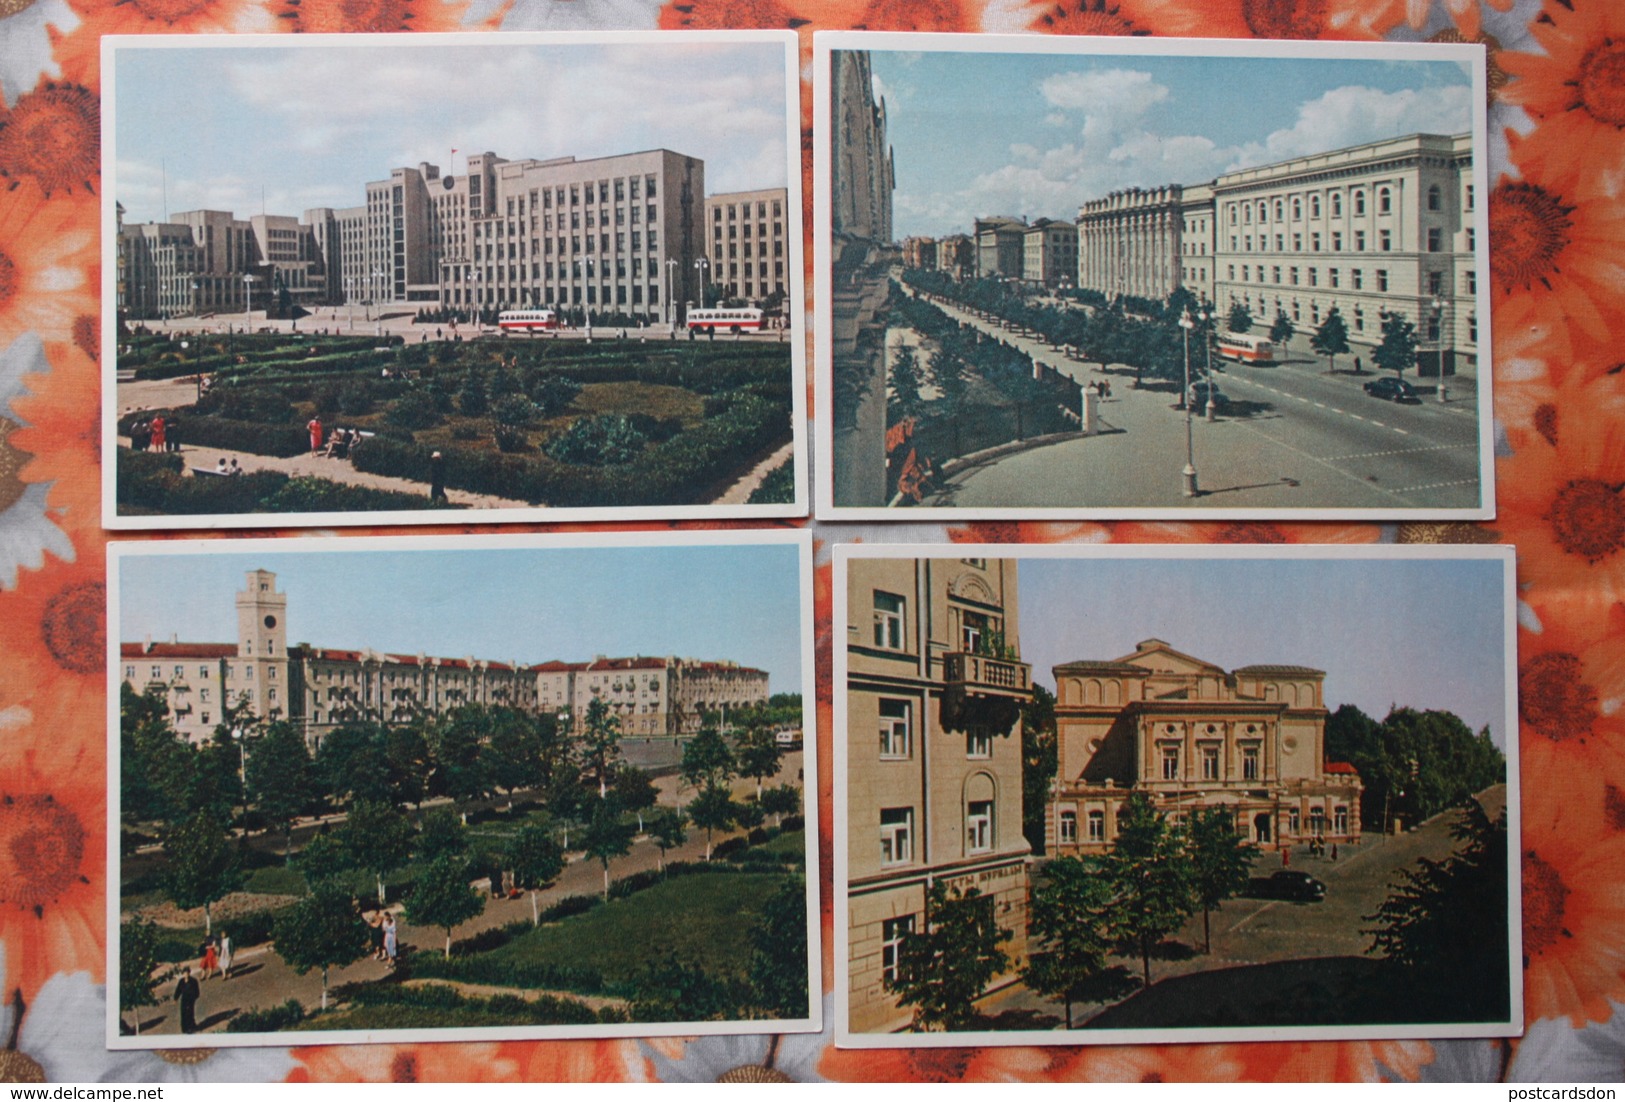 BELARUS. MINSK. Old PC. OLD USSR PC. 1950s - 12 Postcards Lot - Belarus